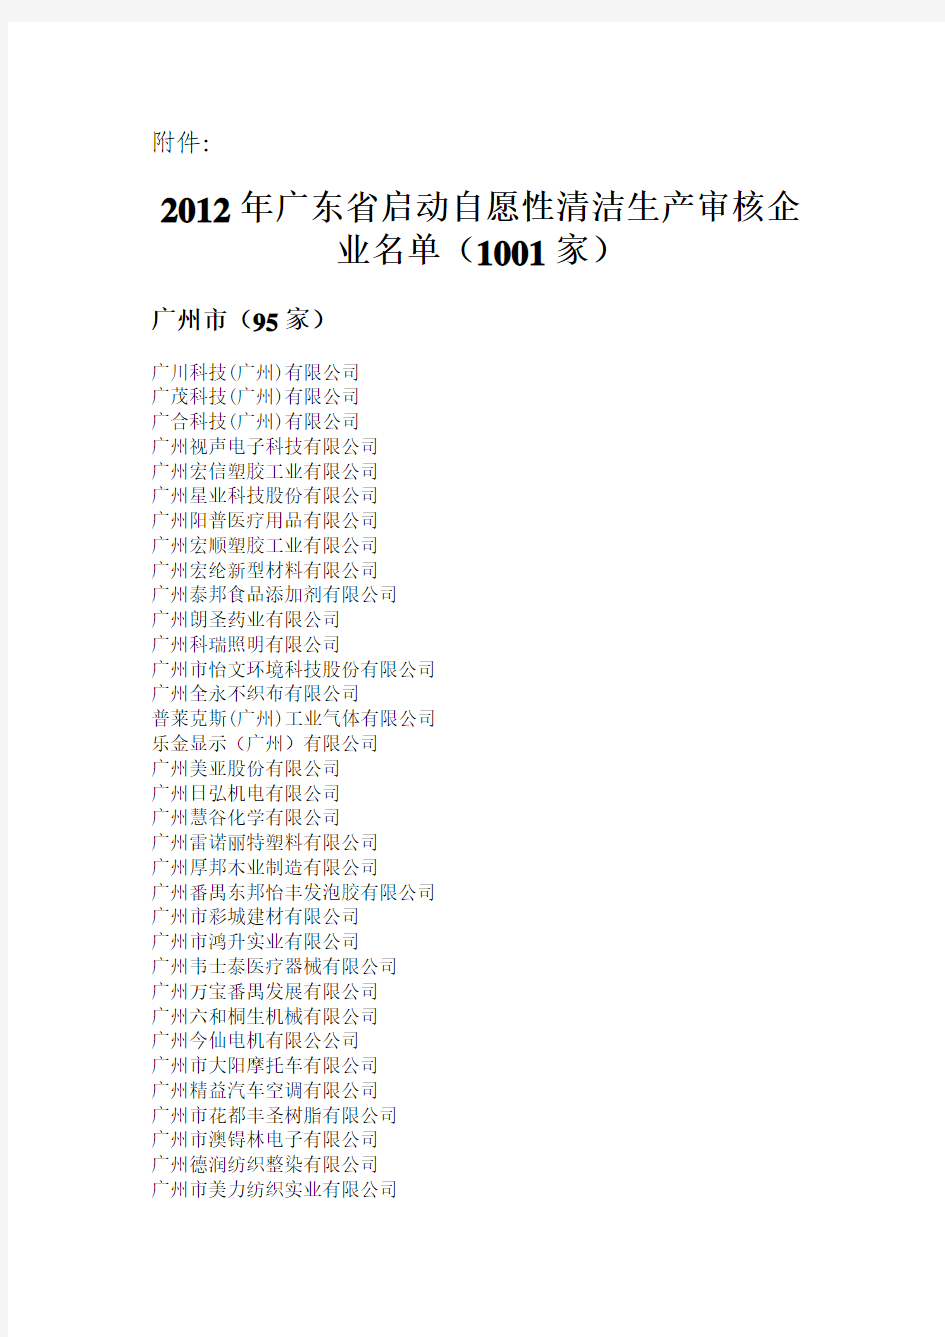 2012年广东省启动自愿性清洁生产审核企业名单(1001家)